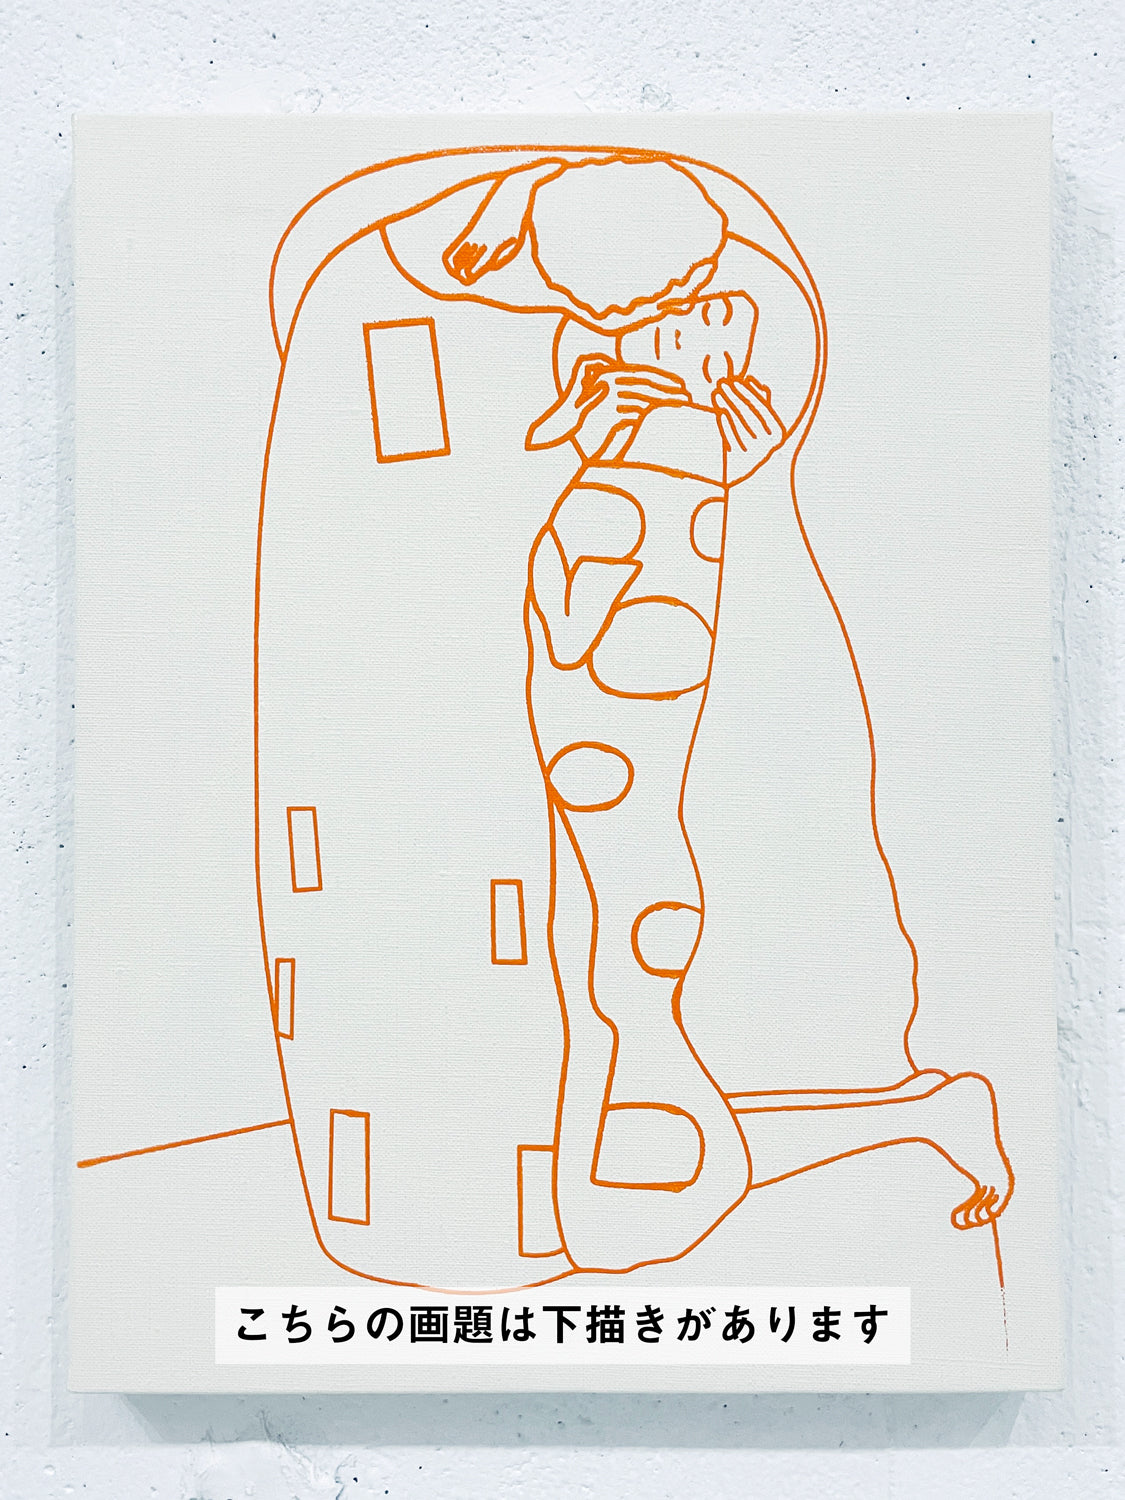 06月08日 (土) 13:00-16:00 | 上野/根津 | グスタフ・クリムト | 接吻 *下描きあり (The Kiss by Gustav Klimt *canvas drafted at Ueno/Nezu)